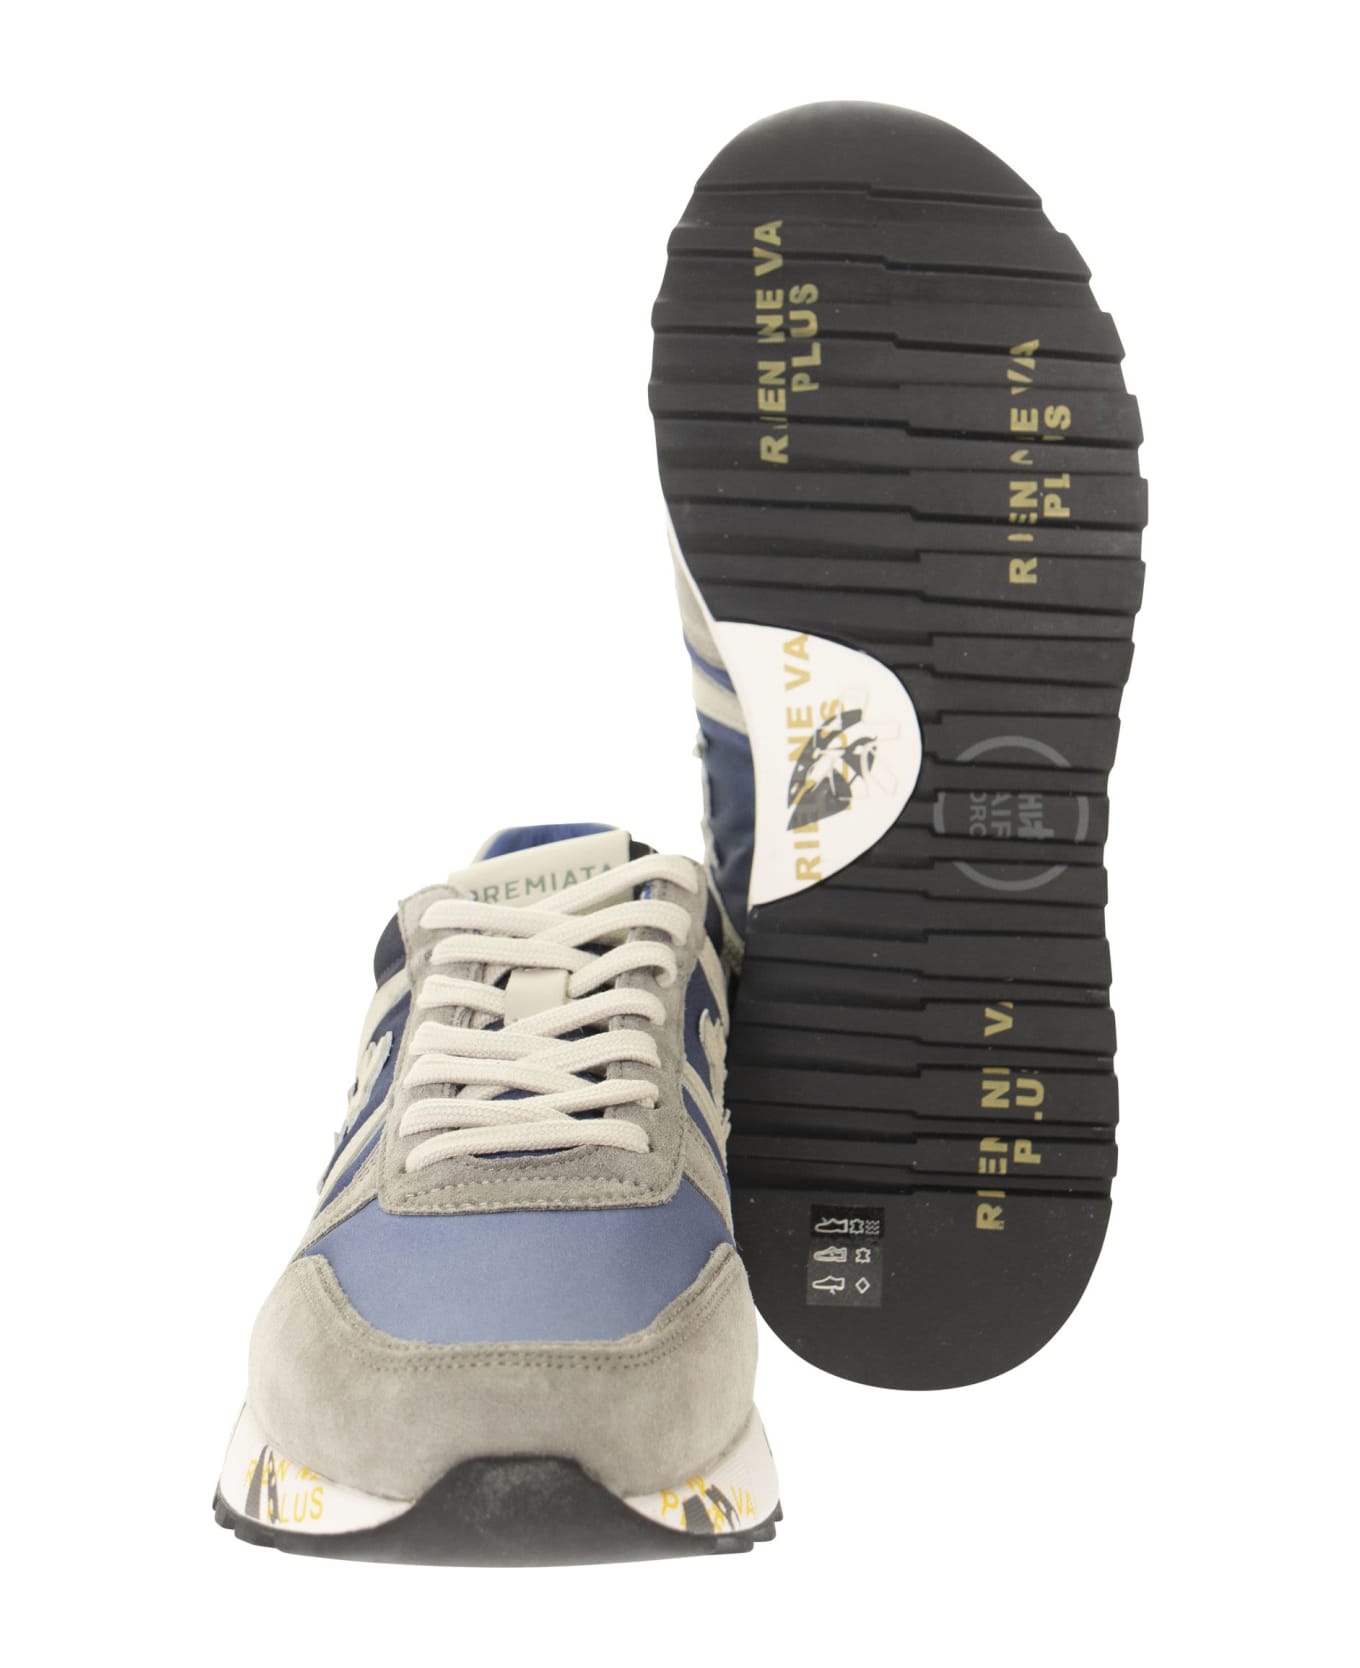 Premiata Lander 4587 Sneakers - Blue/grey スニーカー